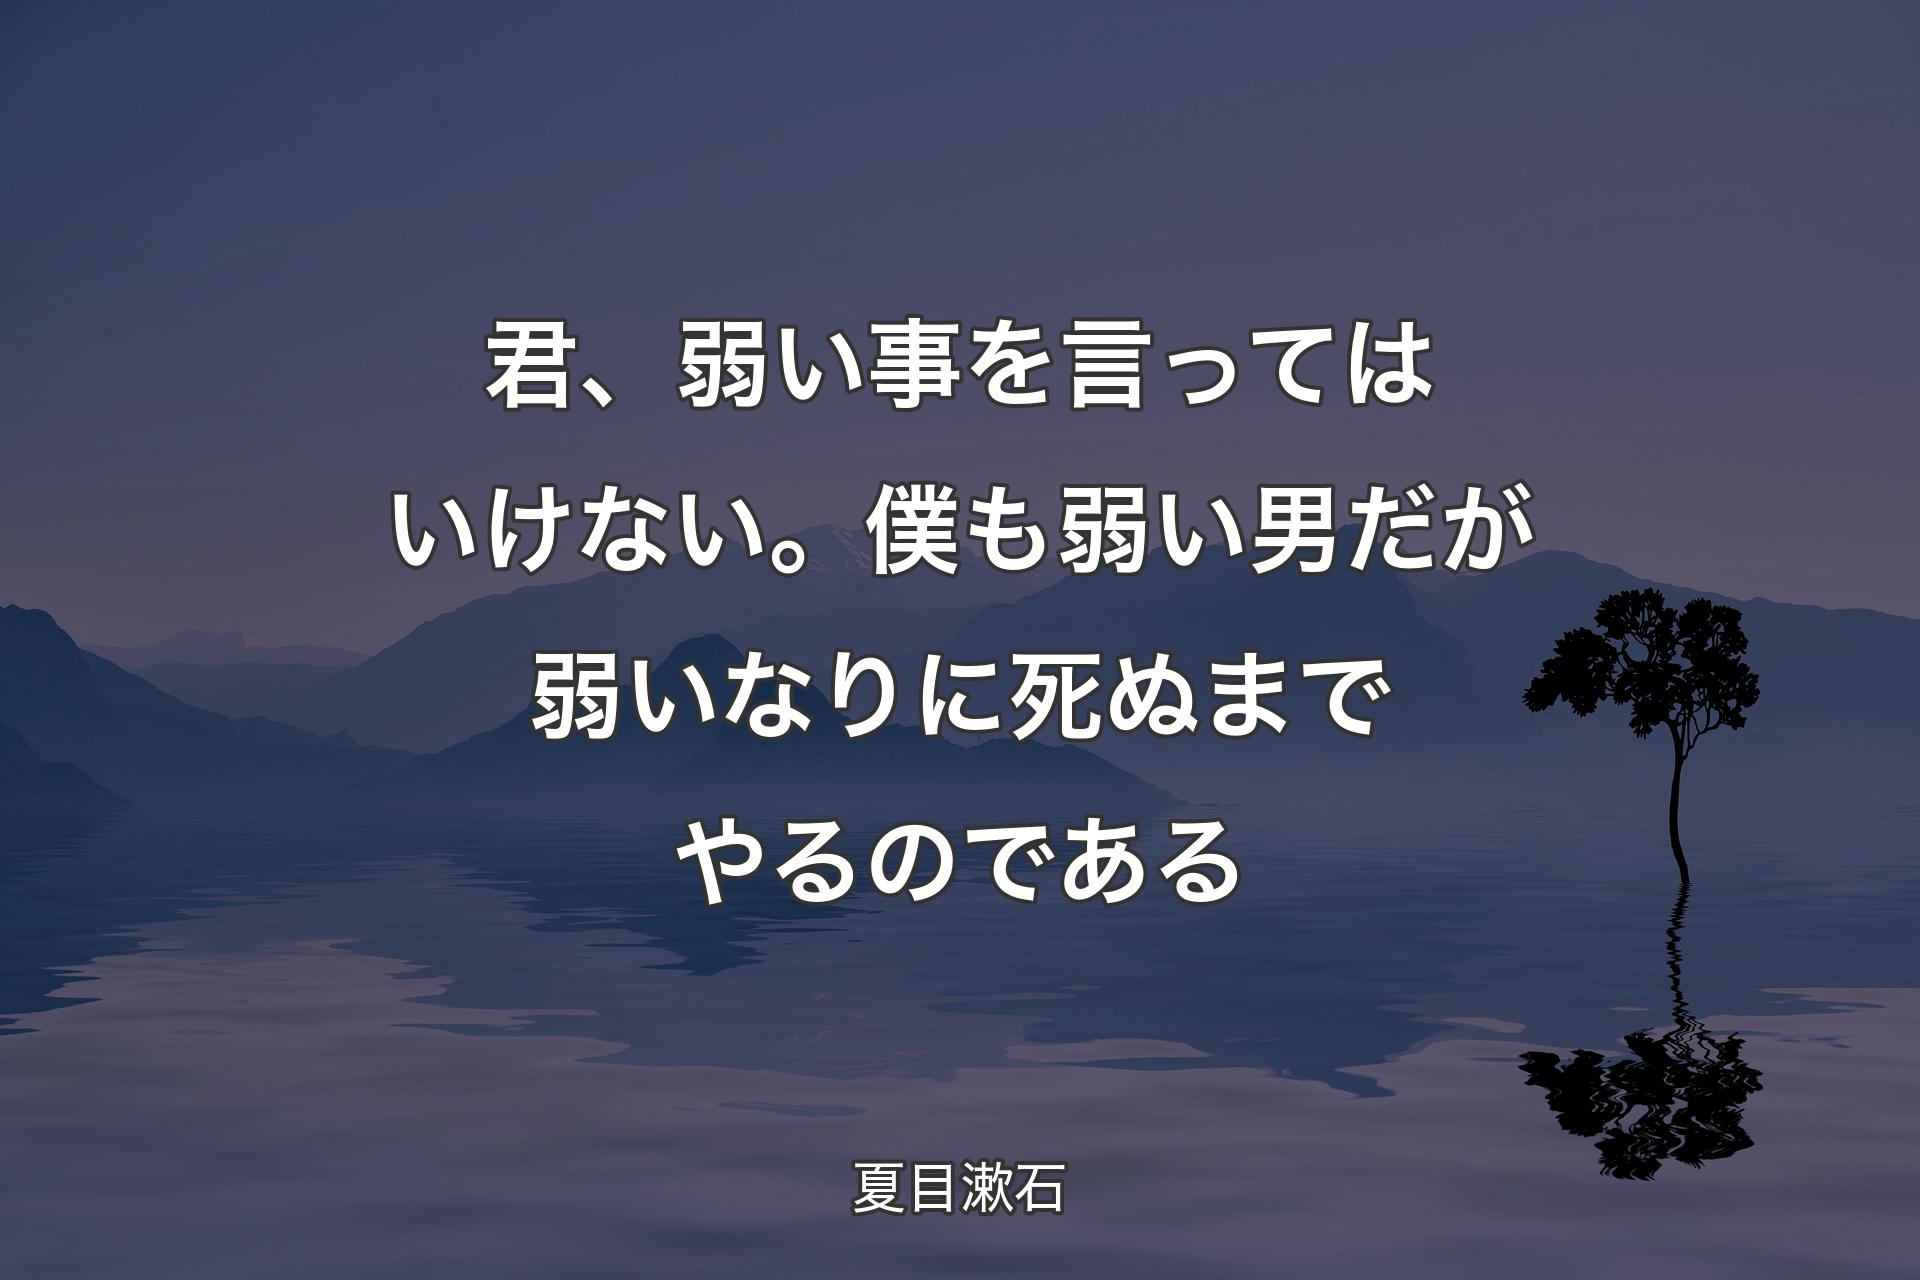 君、弱い事を言ってはいけない。僕も弱い男だが弱いなりに死ぬまでやるのである - 夏目漱石